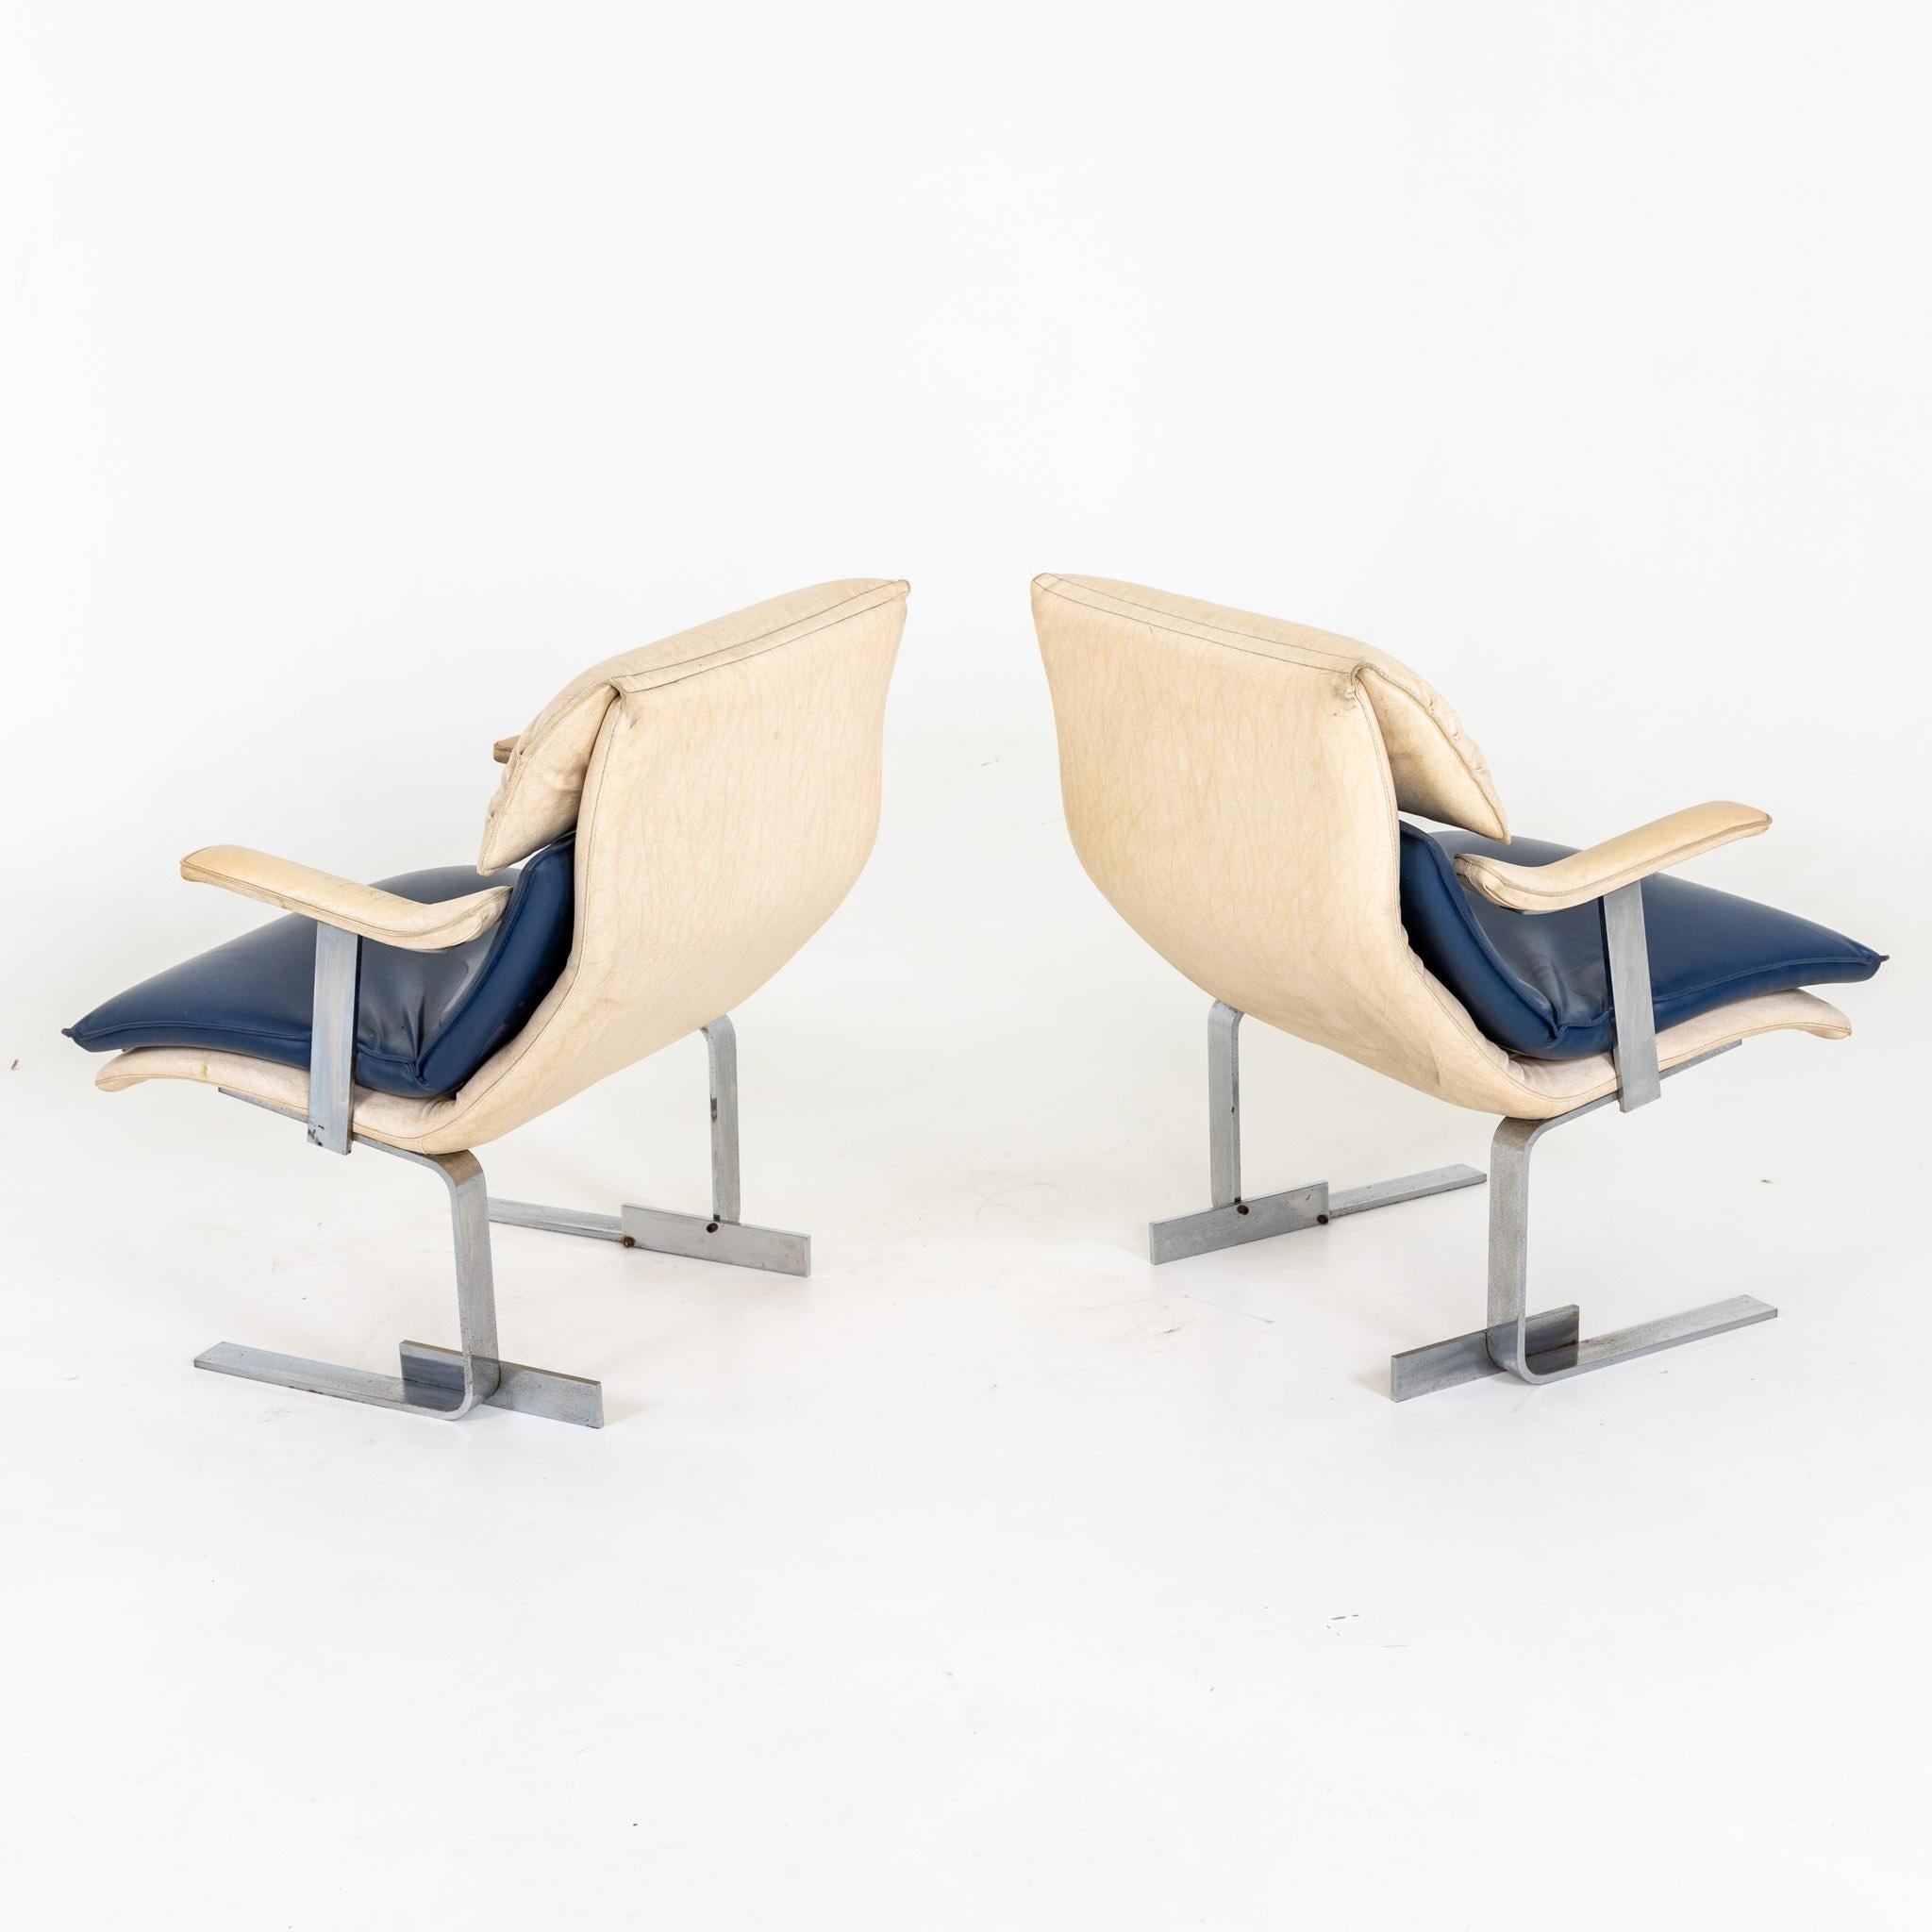 Italian Giovanni Offredi for Saporiti 'Onda Wave' Lounge Chairs, 1970s For Sale